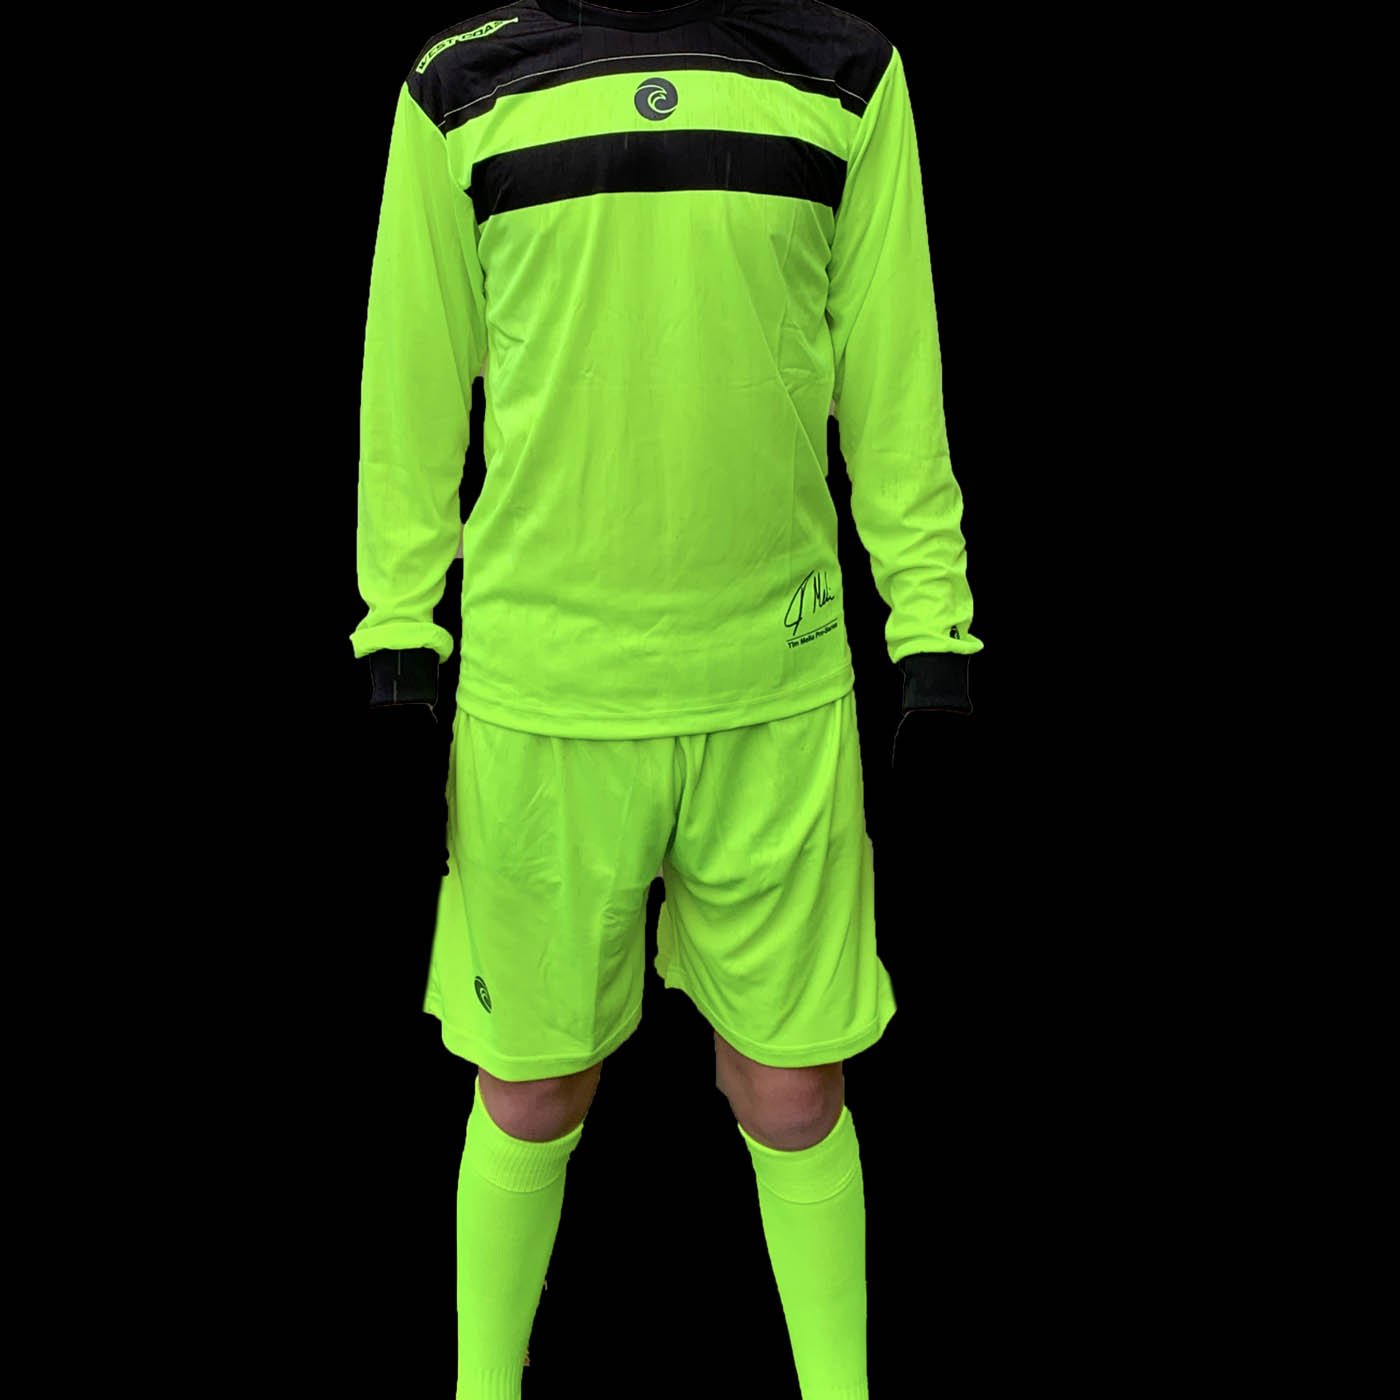 Goalkeeper Kit